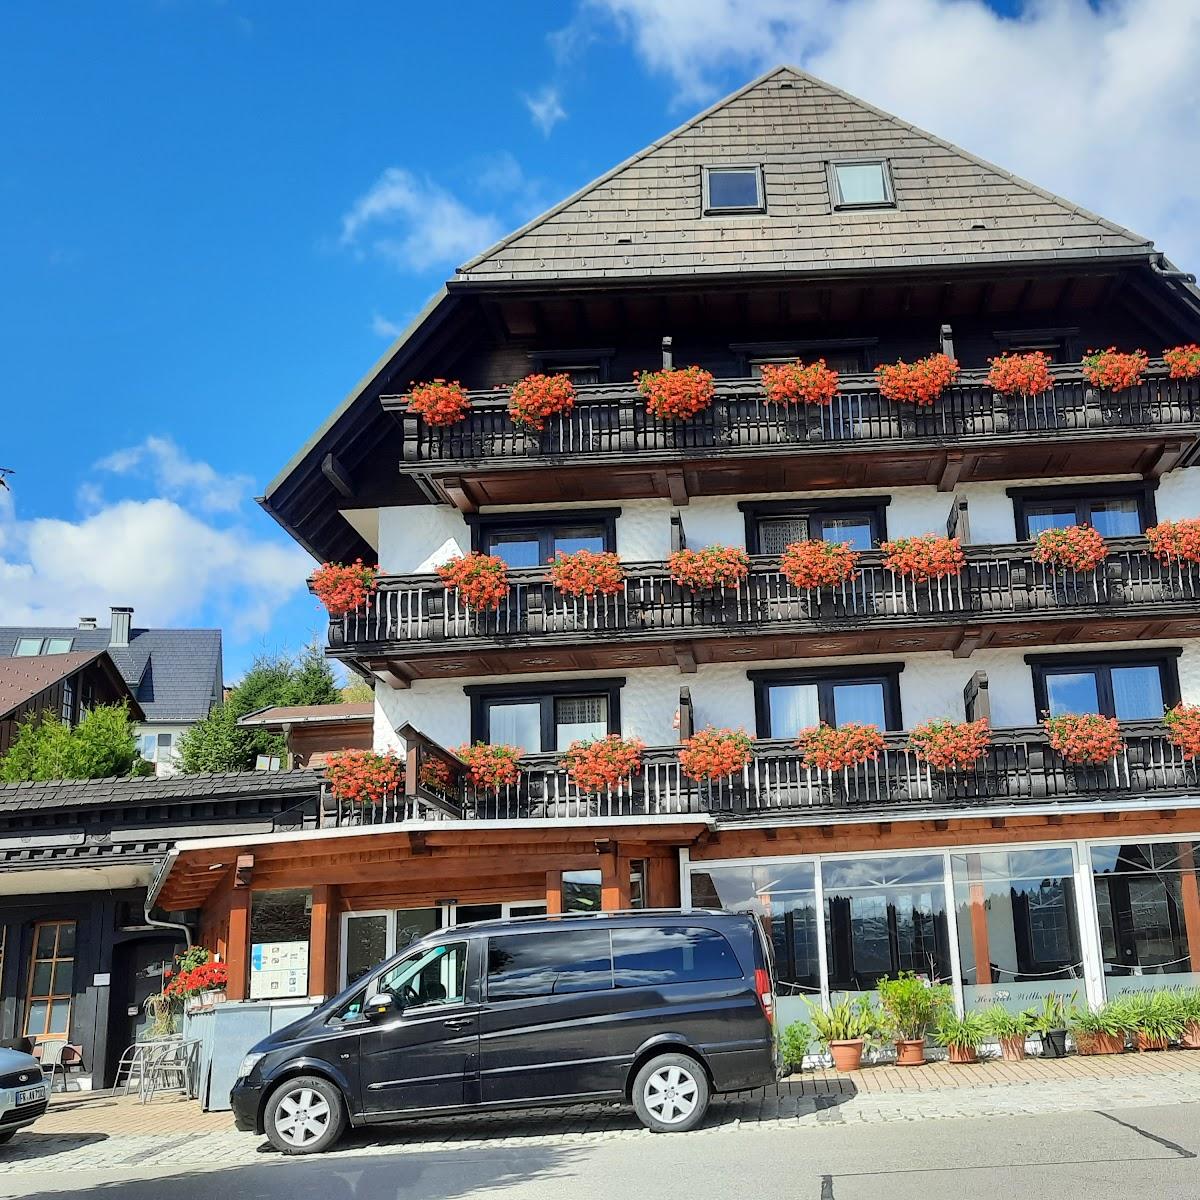 Restaurant "Hotel Hochschwarzwaldhof" in Schluchsee